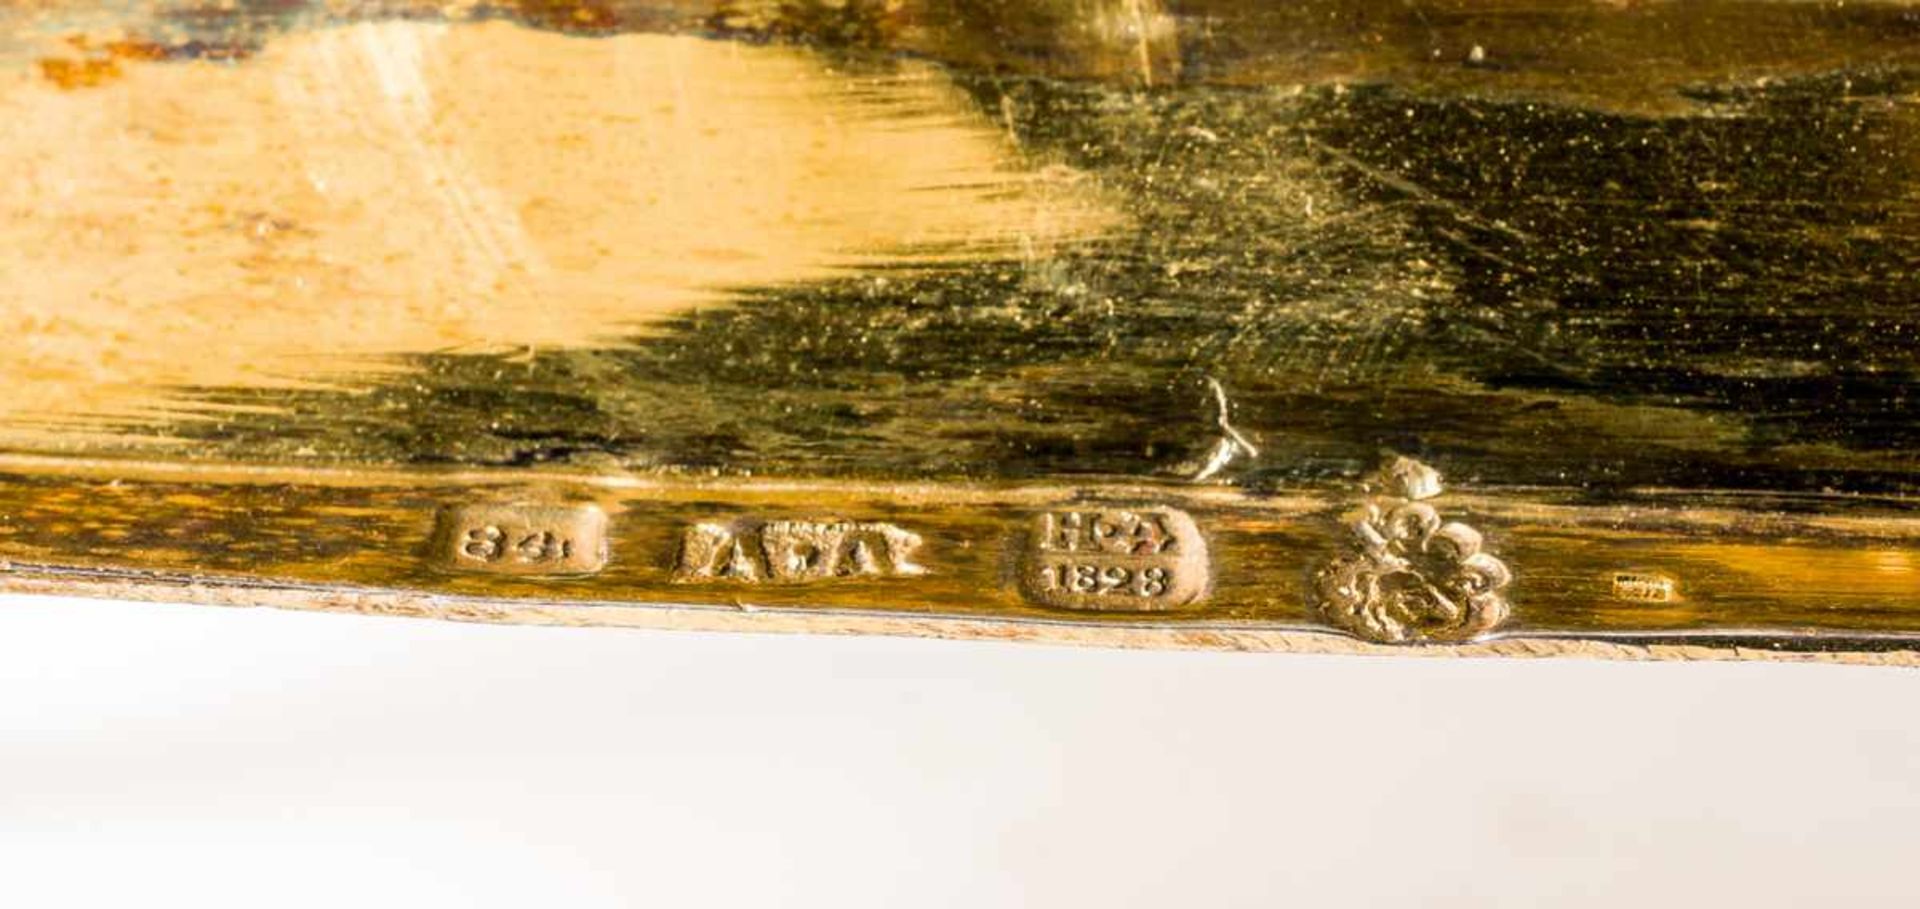 Artophorion Silber vergoldet, mit Finifti, Moskau 1828 Beschaumeister: Nicholai Dubrovin (1822-1855) - Bild 2 aus 2